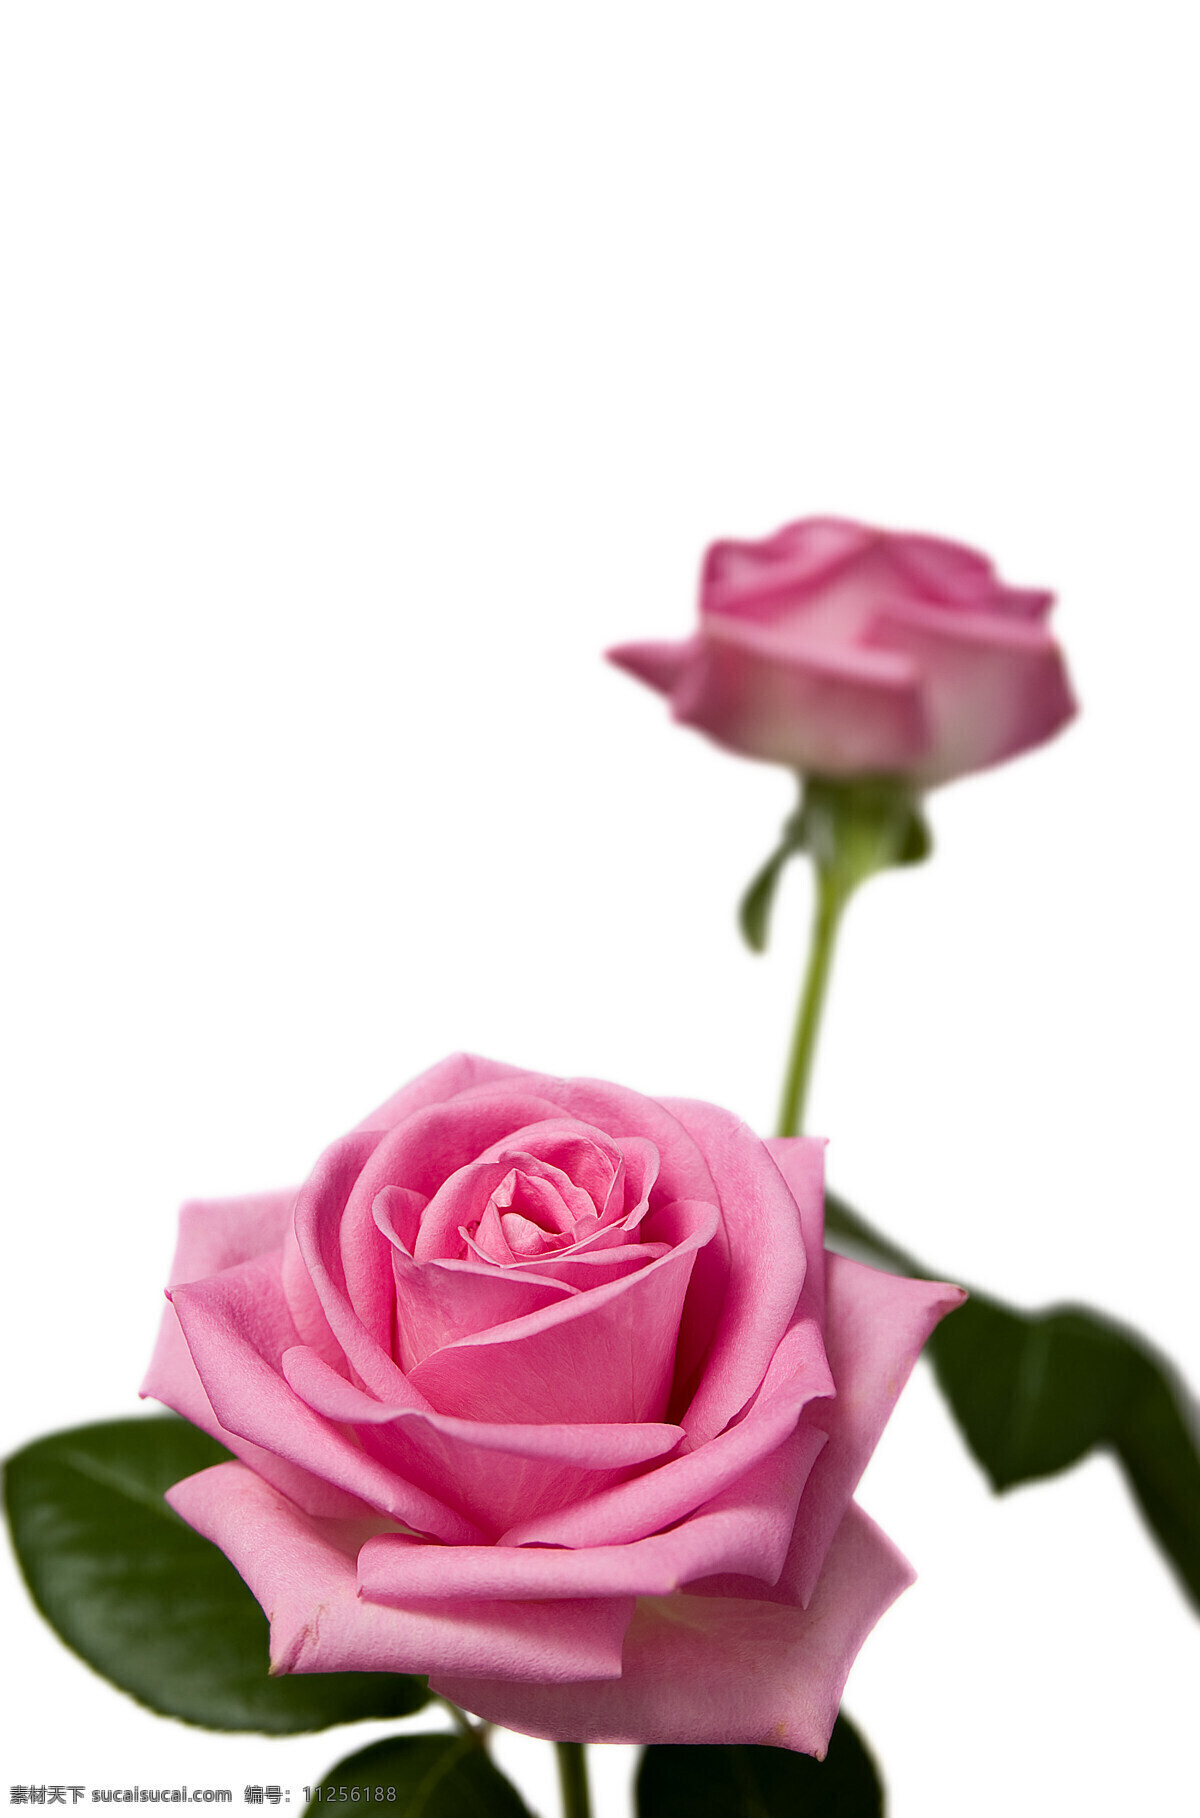 粉红玫瑰 玫瑰花 徘徊花 刺玫花 蔷薇 科 落叶 灌木 绿叶 粉红白玫瑰 花瓣 花卉 花草 生物世界